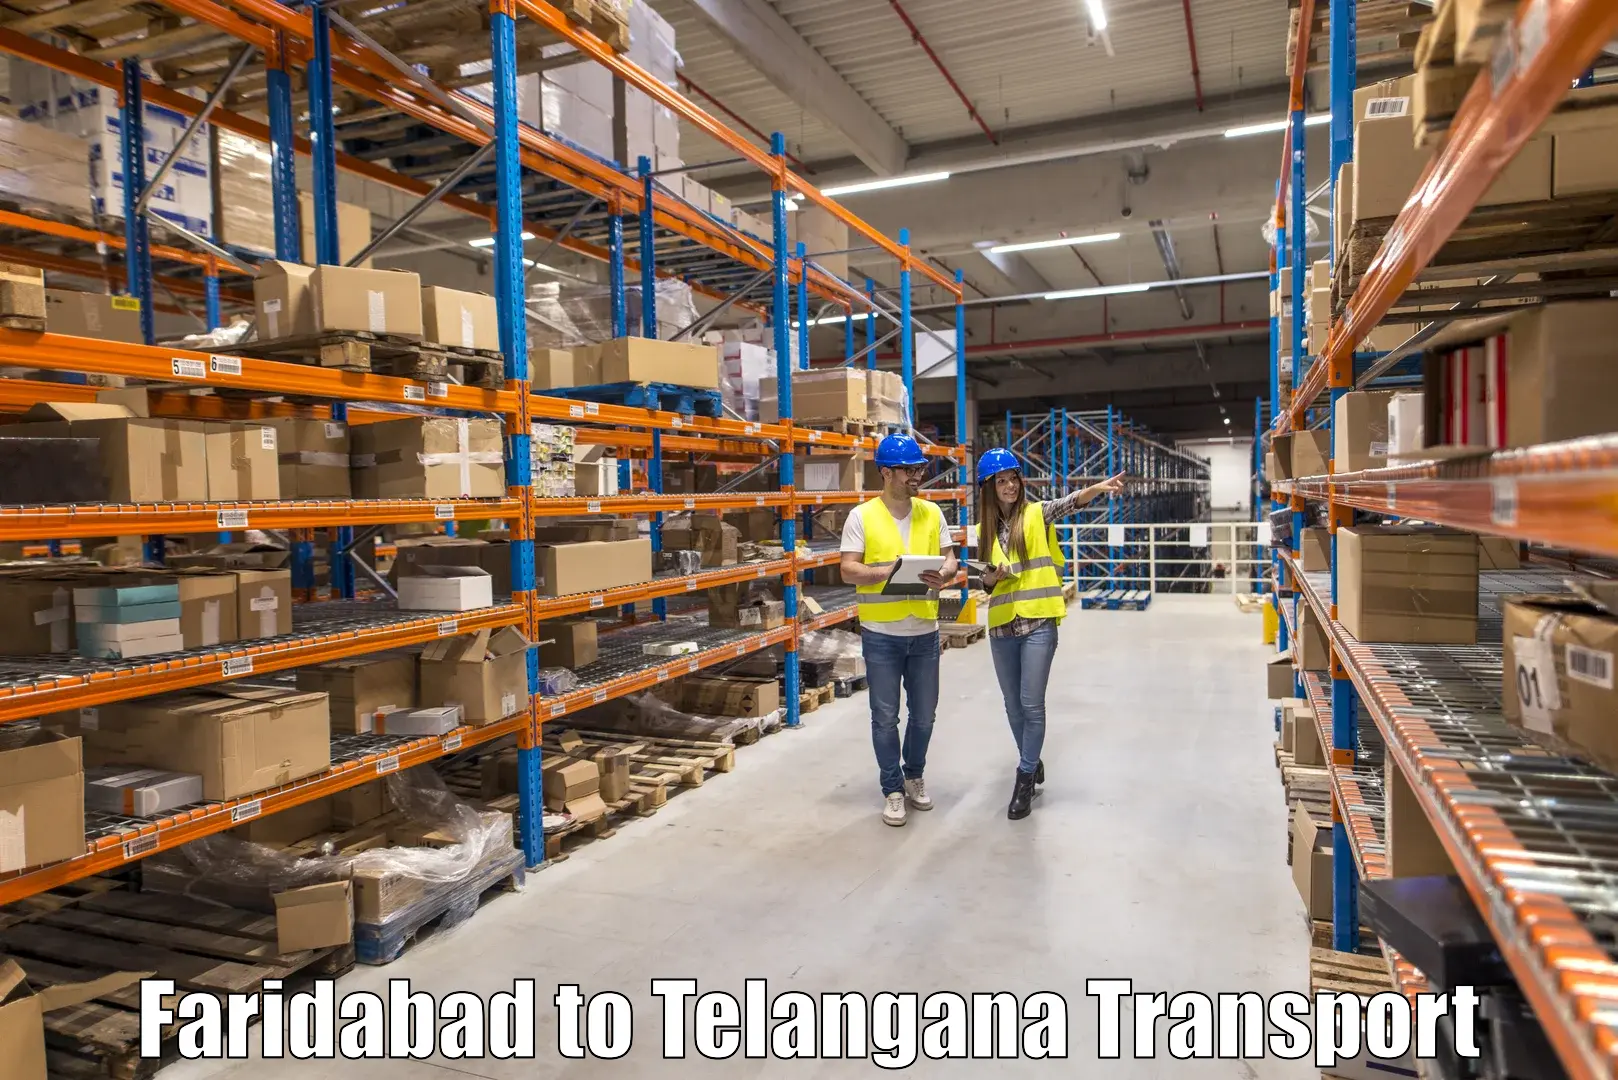 International cargo transportation services Faridabad to Kosgi